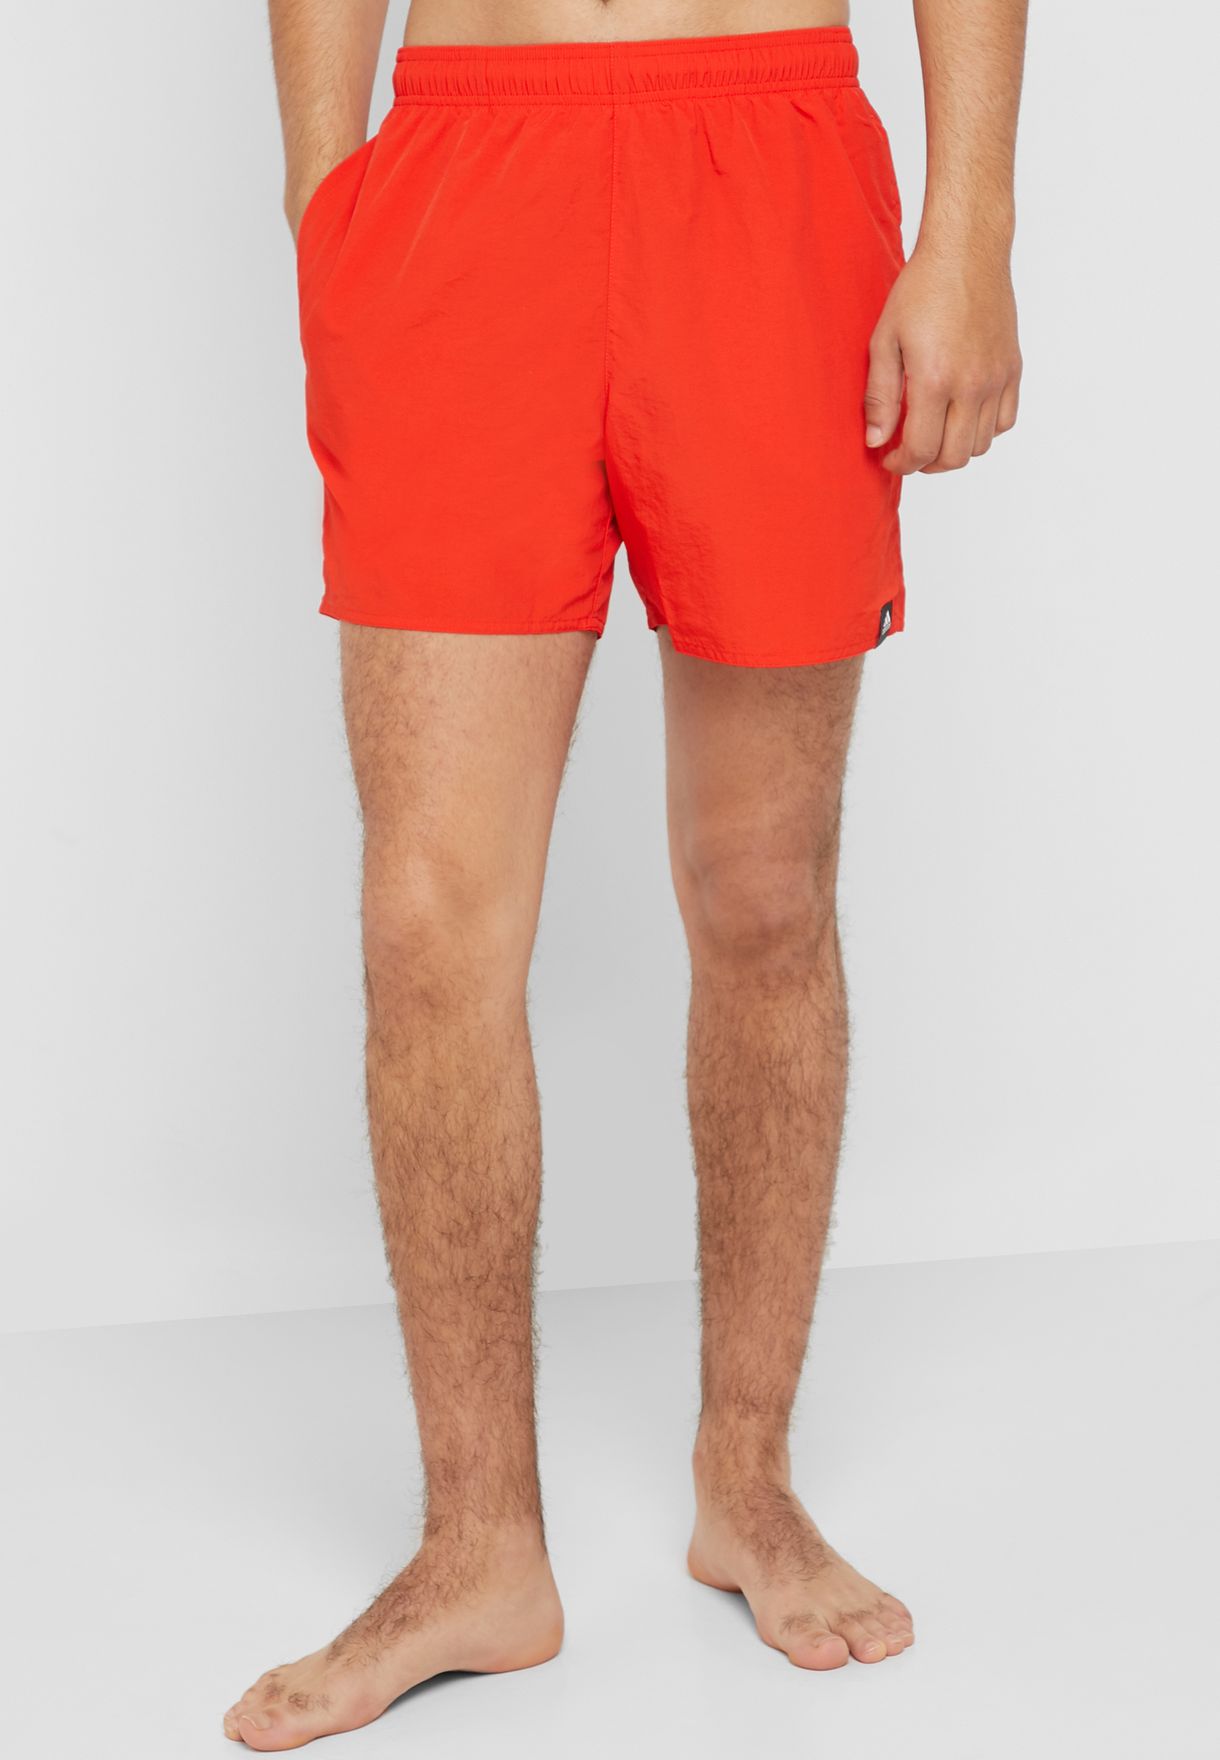 adidas orange swim shorts